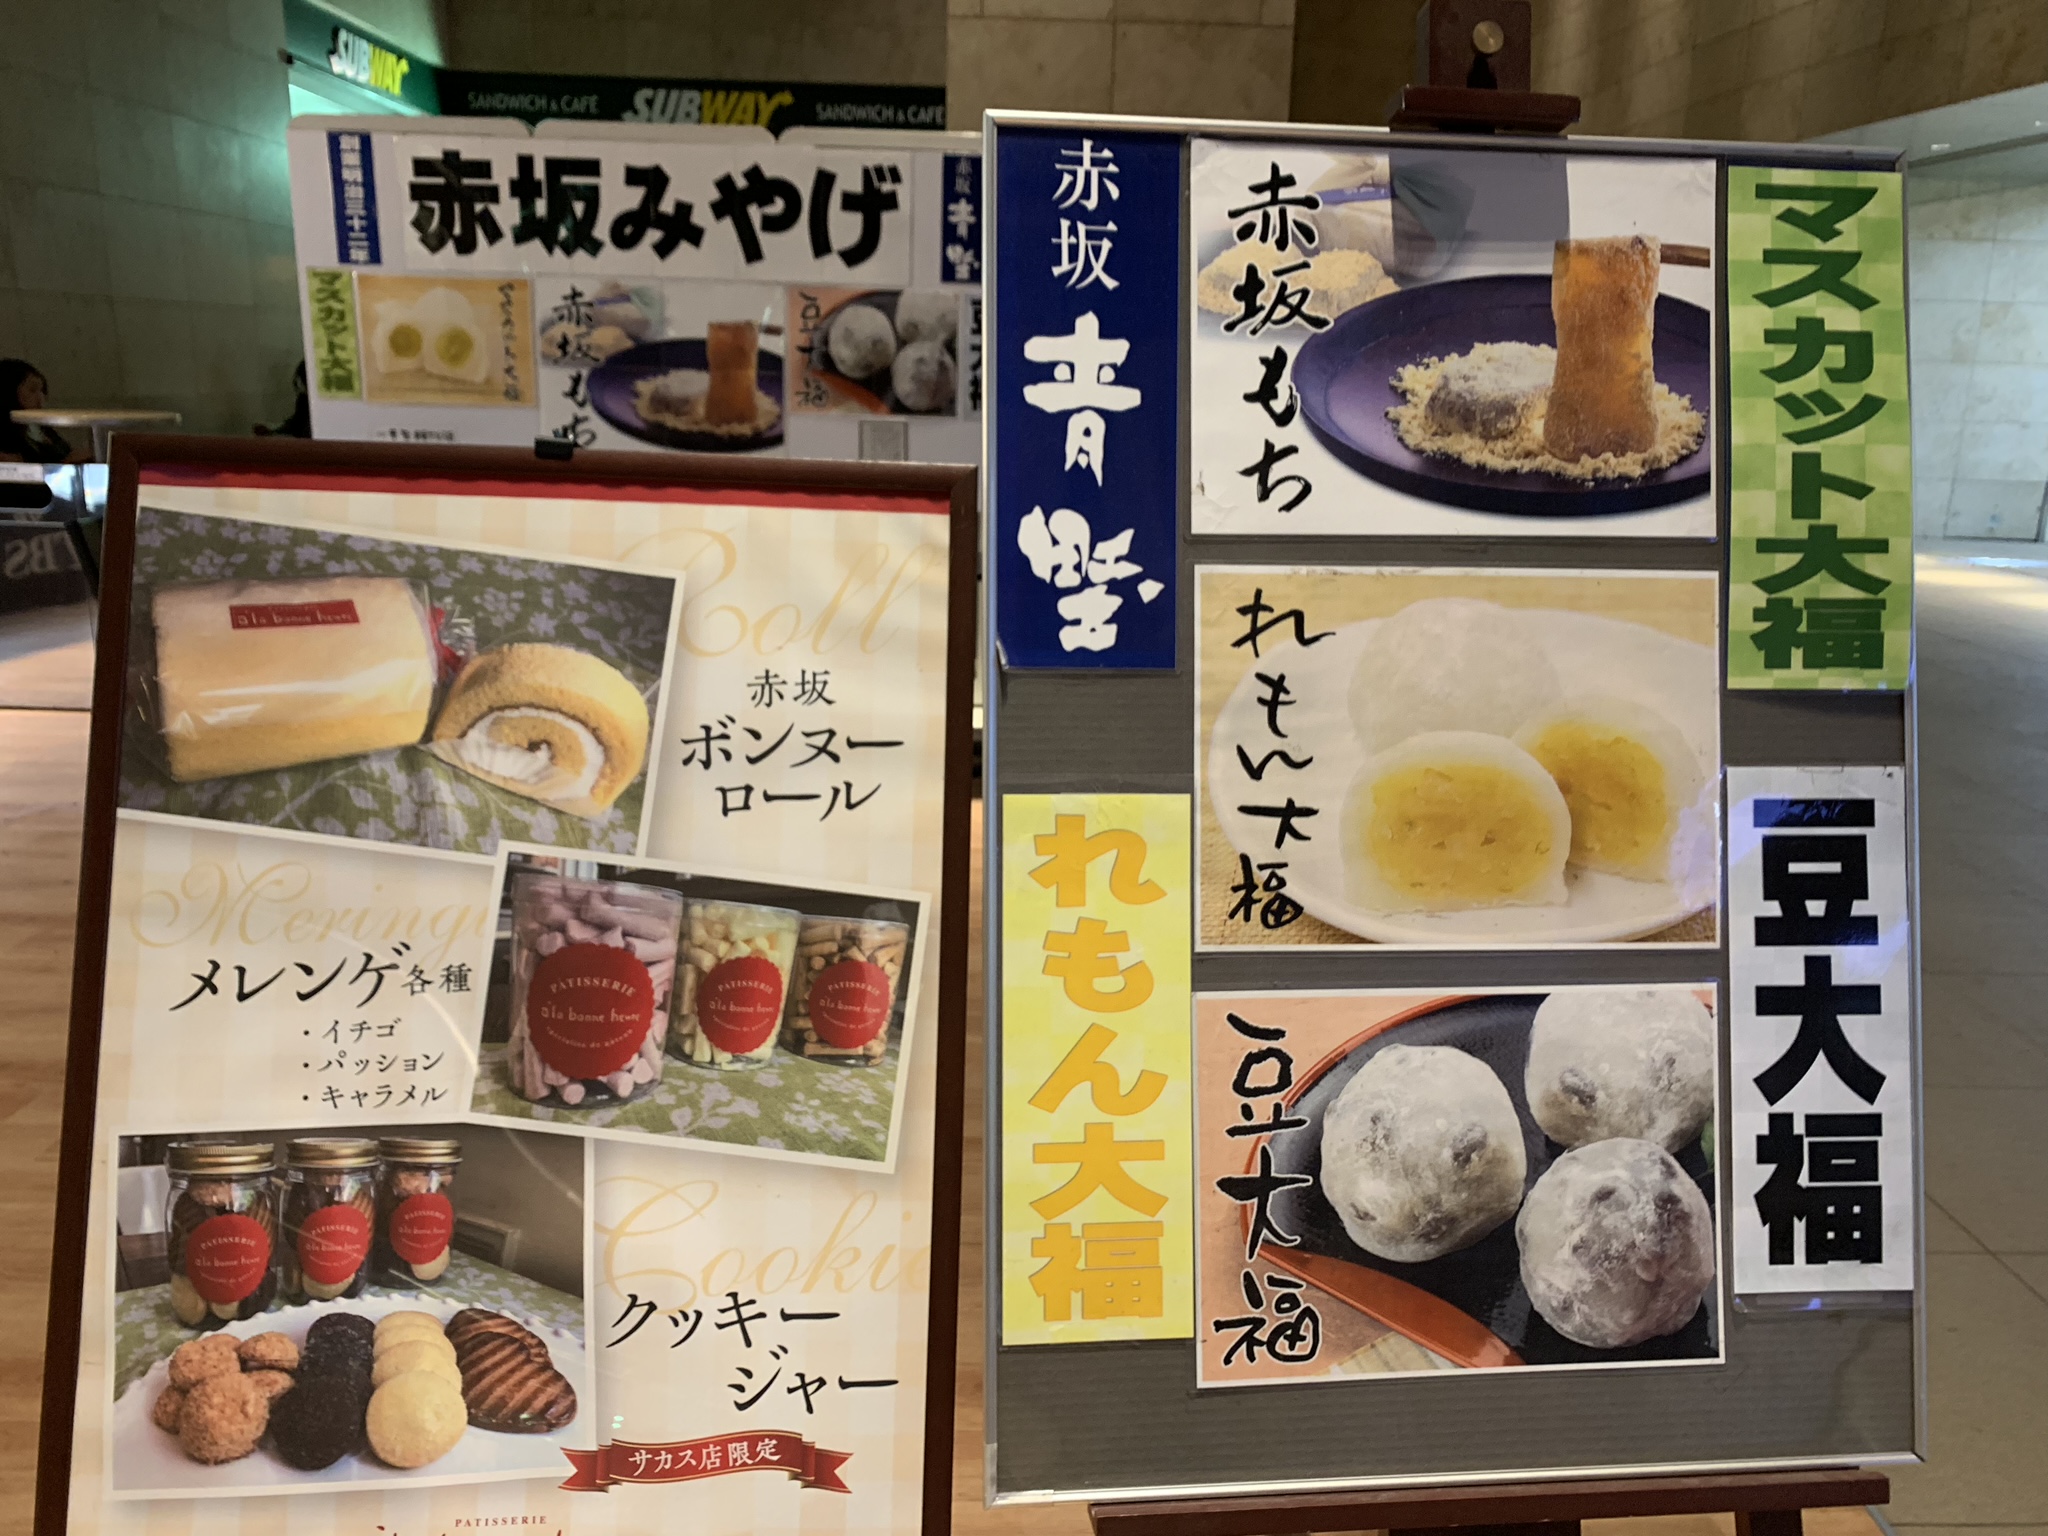 赤坂青野と赤坂アラボンヌーのロールケーキが買えるよ！